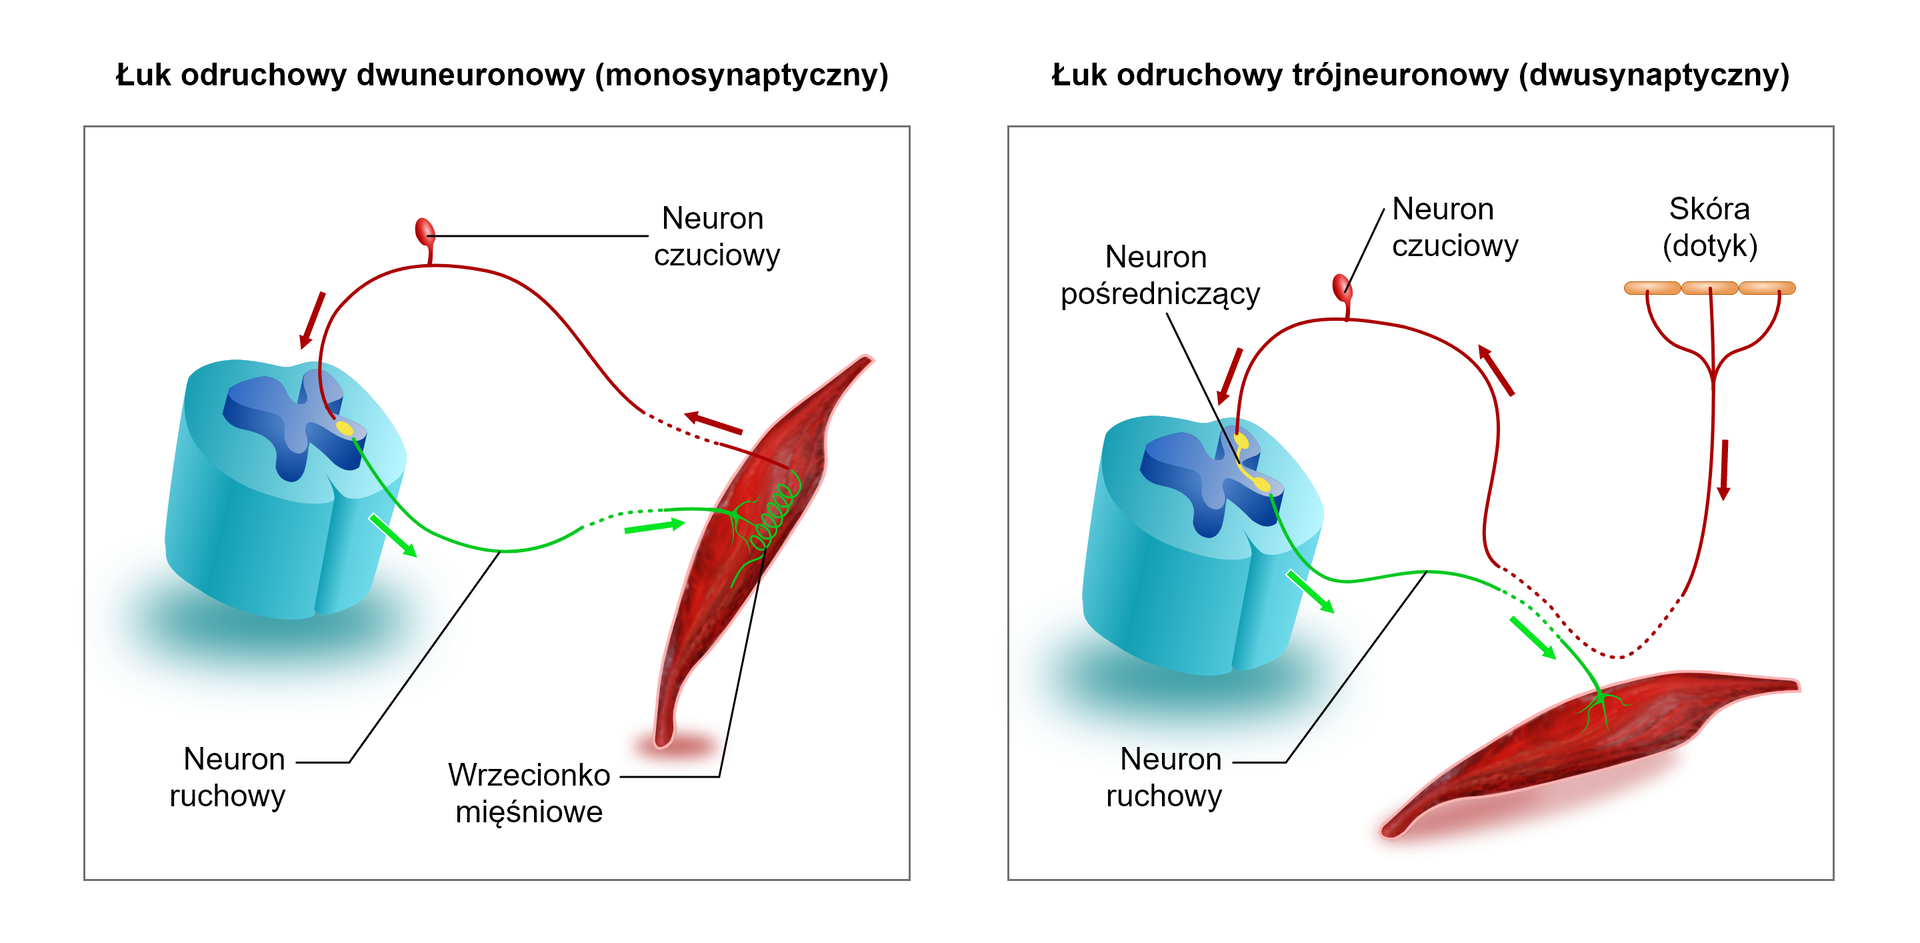 Ilustracja przedstawia łuk odruchowy dwuneuronowy i łuk odruchowy trójneuronowy. Na ilustracji dotyczącej łuku odruchowego dwuneuronowego (monosynaptycznego) po prawej stronie jest wrzeciono mięśniowe. Impuls biegnie do neuronu czuciowego i do rdzenia kręgowego. W rdzeniu między neuronem czuciowym a ruchowym znajduje się żółty owal. Impuls wraca do mięśnia. Na drugiej ilustracji przedstawiono łuk odruchowy trójneuronowy (dwusynaptyczny). Po prawej stronie schematu zaznaczono fragment skóry (dotyk). Od komórek skóry impuls biegnie do neuronu czuciowego. Ma on postać owala z jednym wypustkiem. Impuls dostaje się do rdzenia kręgowego. Tam pomiędzy neuronem czuciowym a ruchowym znajduje się neuron pośredniczący. Z rdzenia kręgowego za pośrednictwem neuronu ruchowego impuls biegnie do mięśnia.   